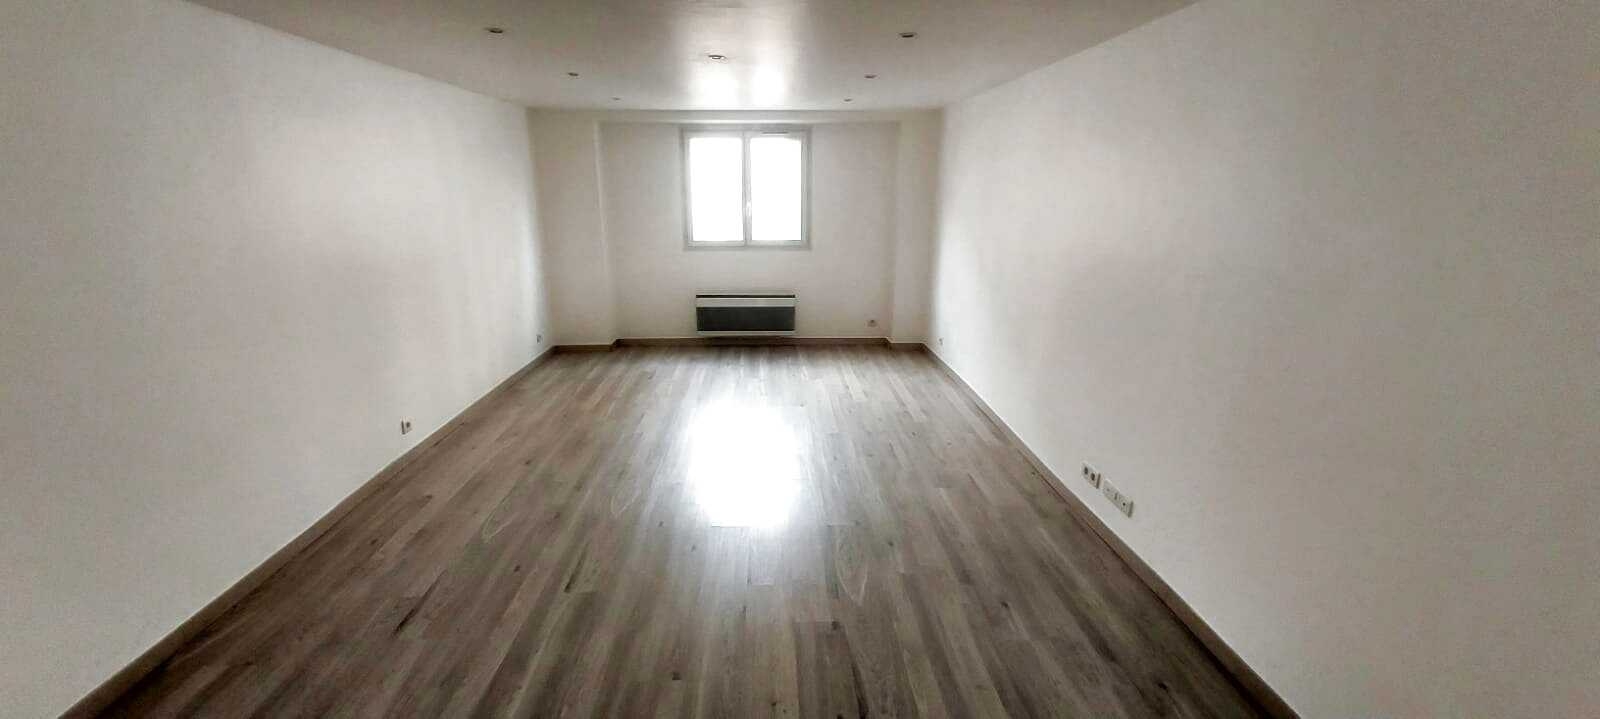 Appartement 1 pièce - 44m² - PARIS  - 12ème